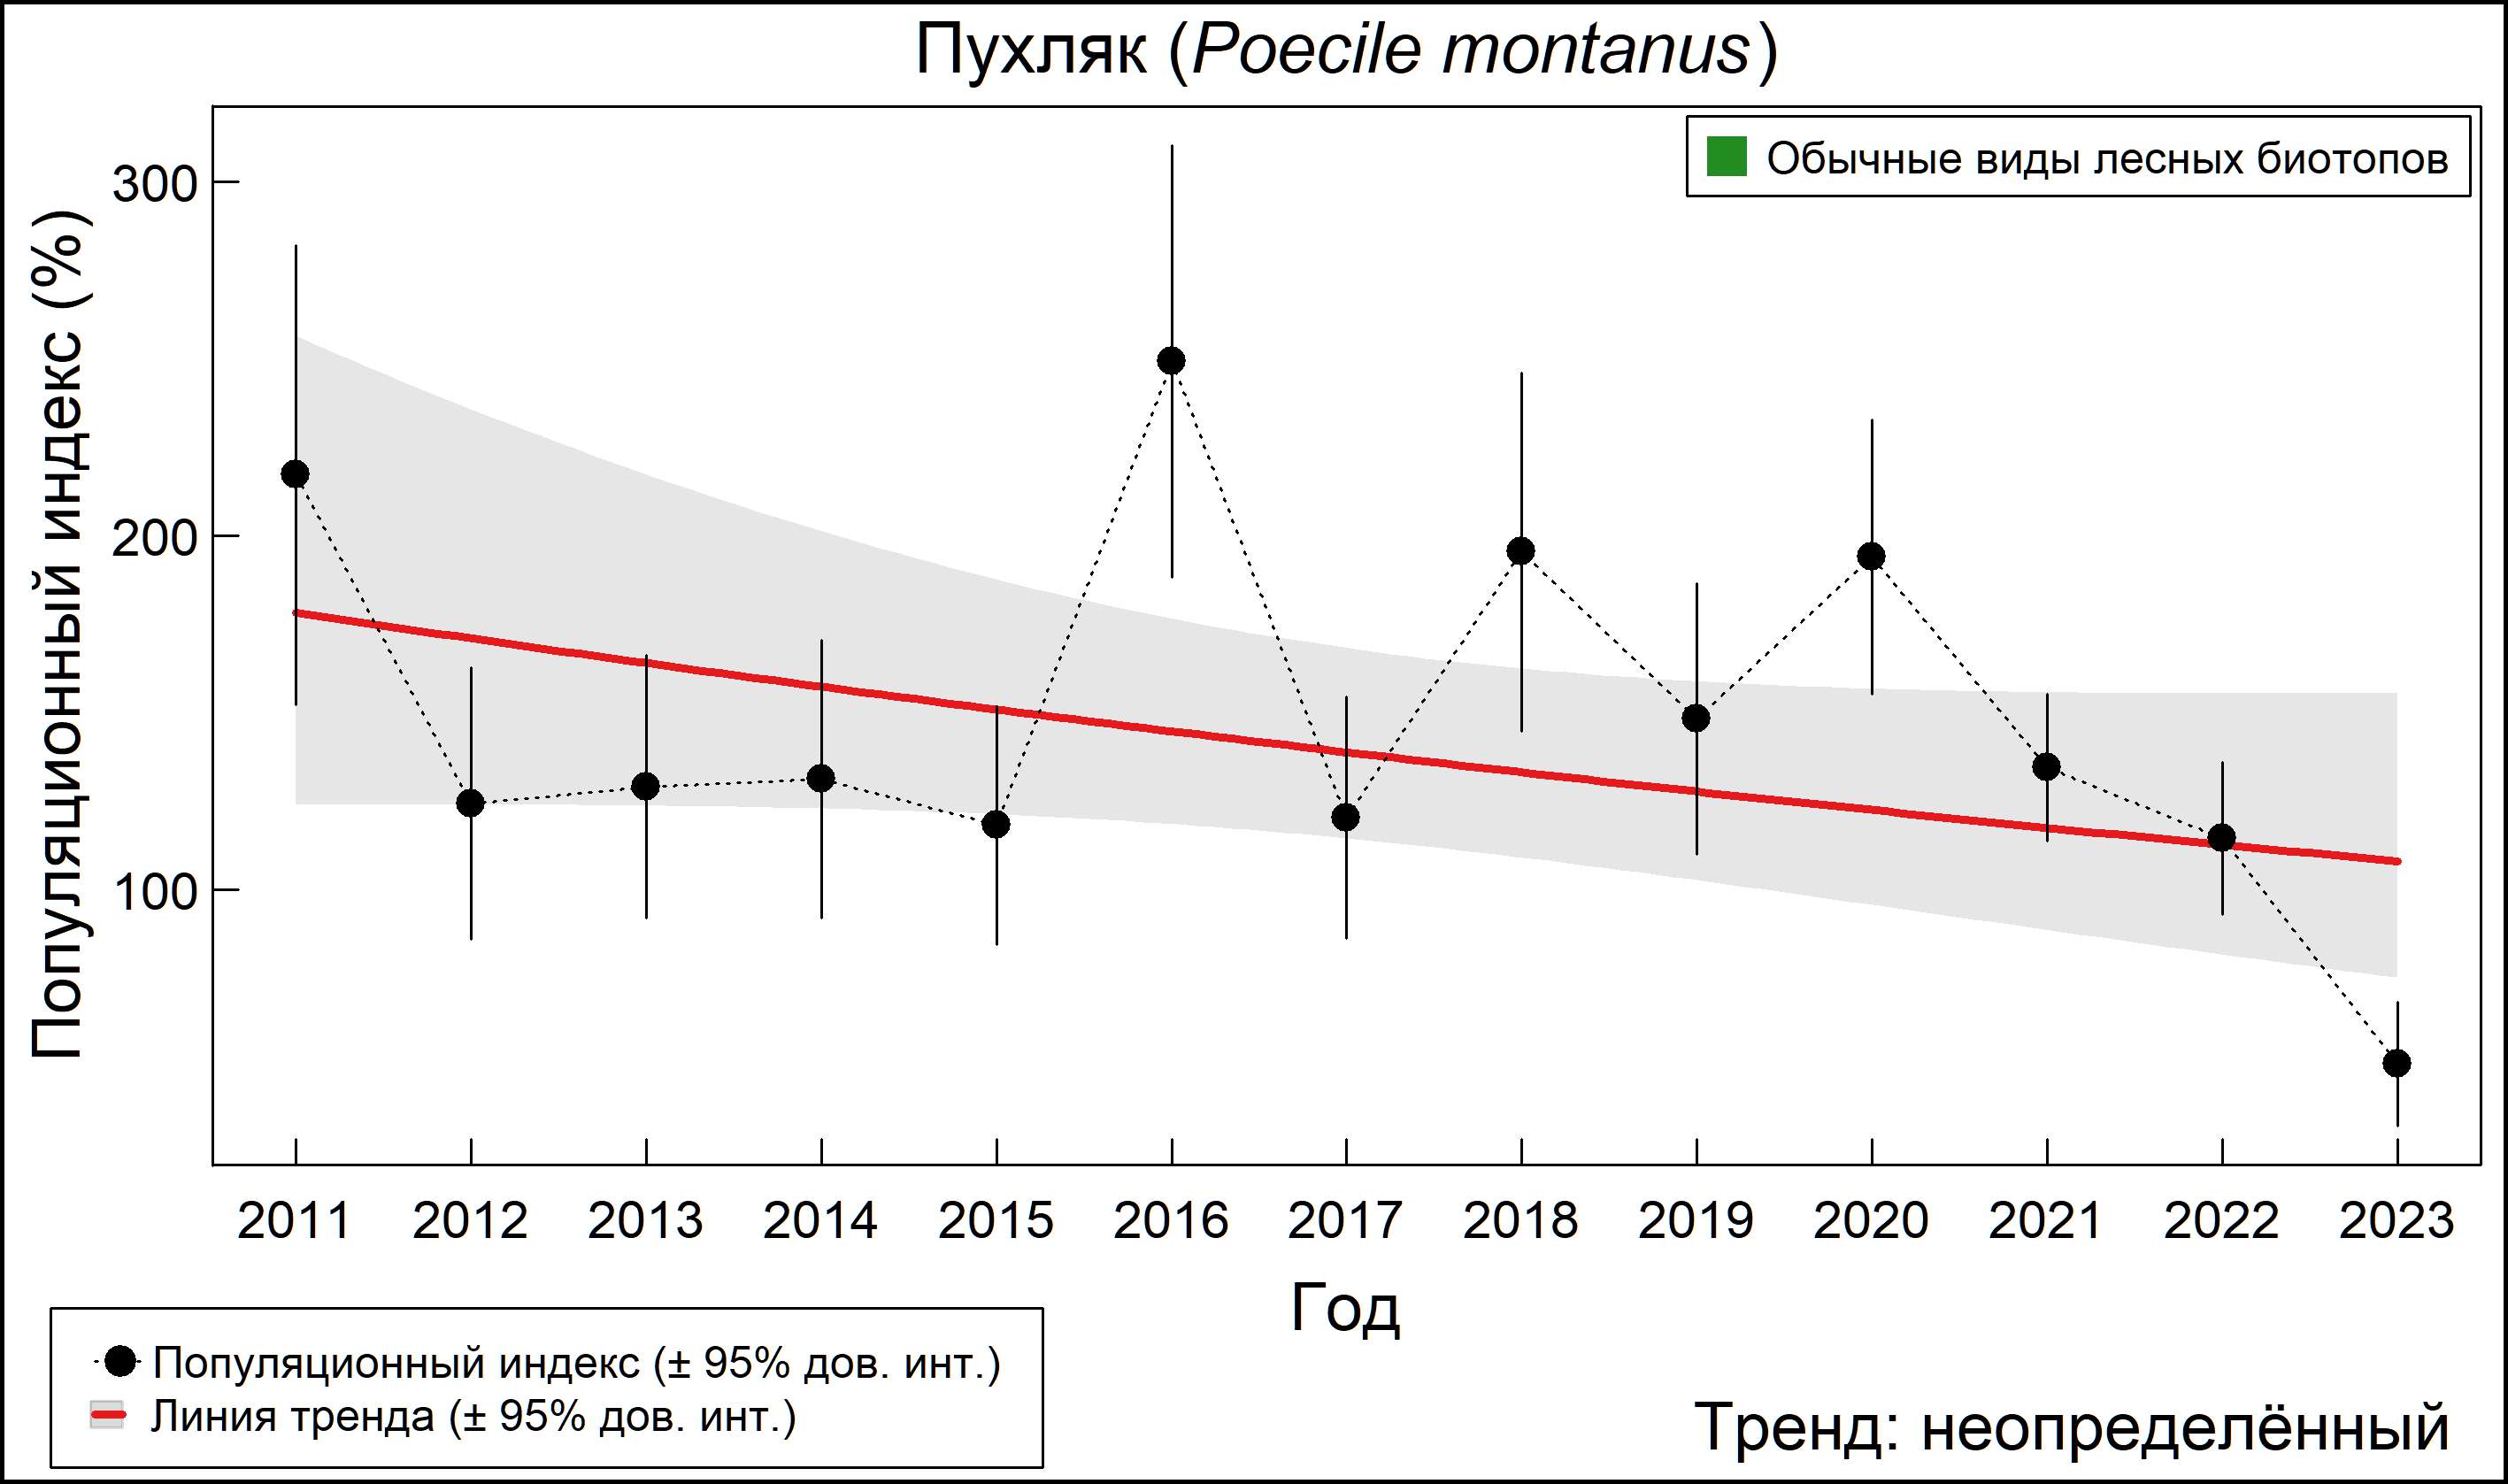 Пухляк (Poecile montanus). Динамика численности по данным мониторинга в Москве и Московской области